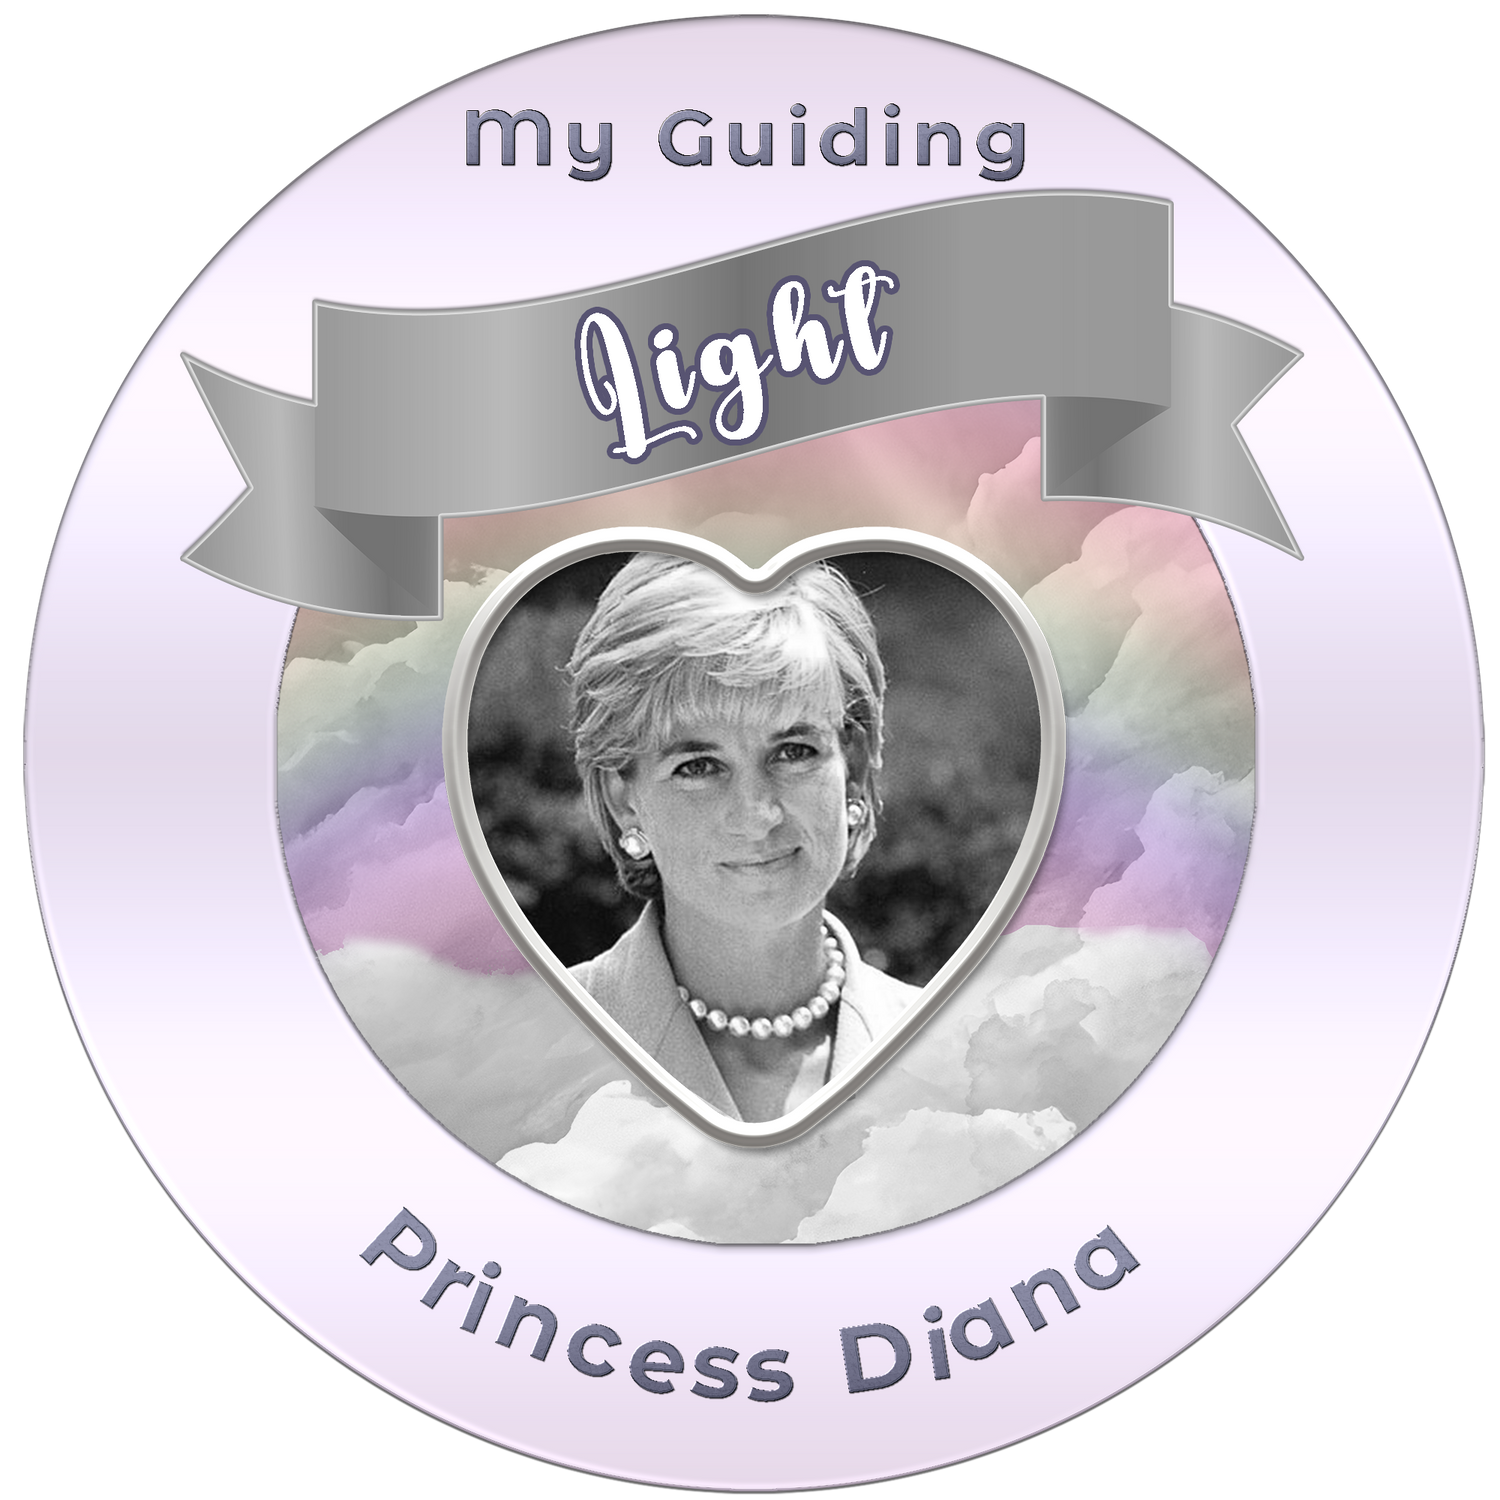 Princess Diana - A Guiding Light For Families and Children